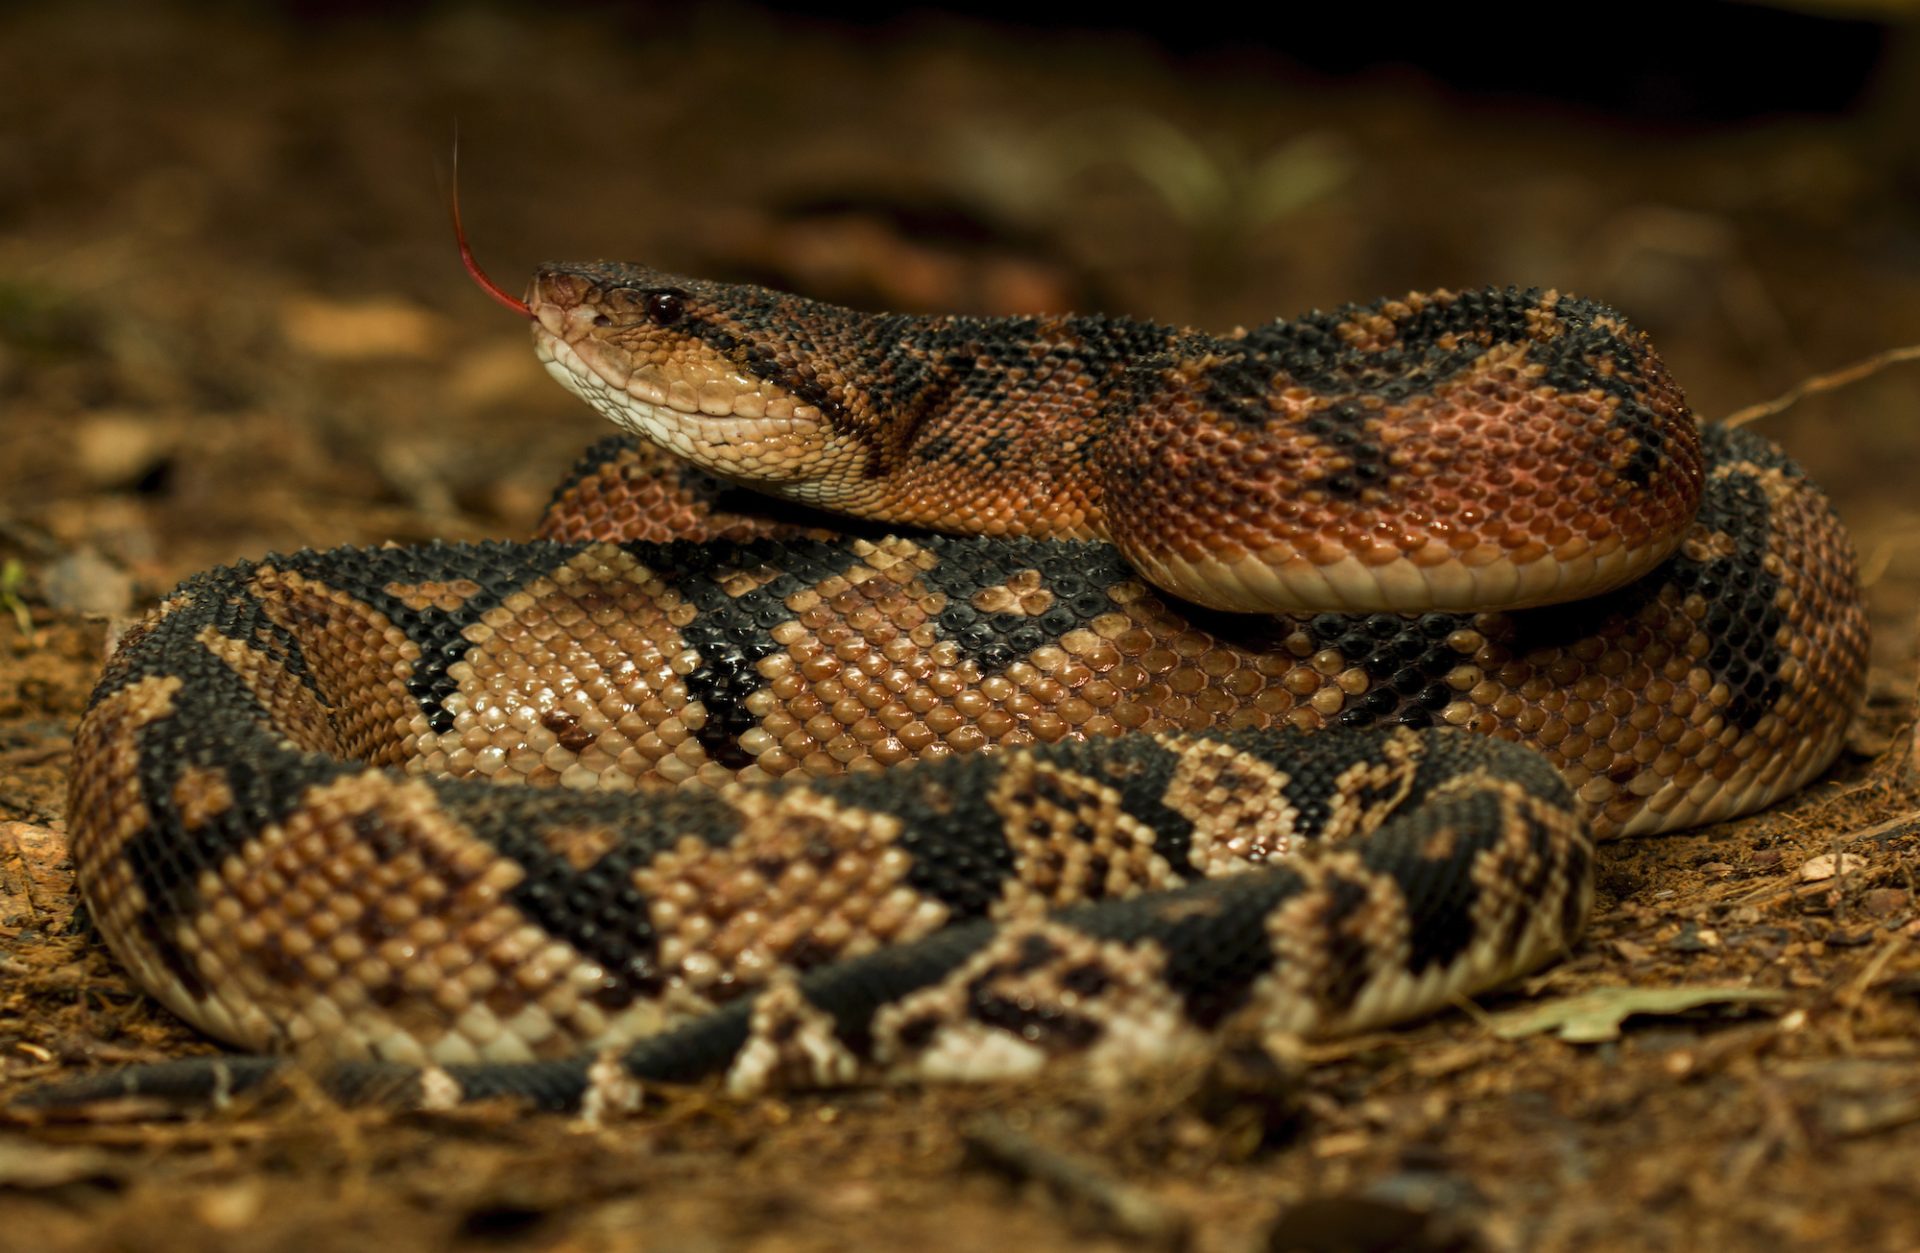 La verrugosa o shushupe es la serpiente venenosa más grande de Sudamérica. Puede medir más de 3 metros. Foto: Germán Chávez